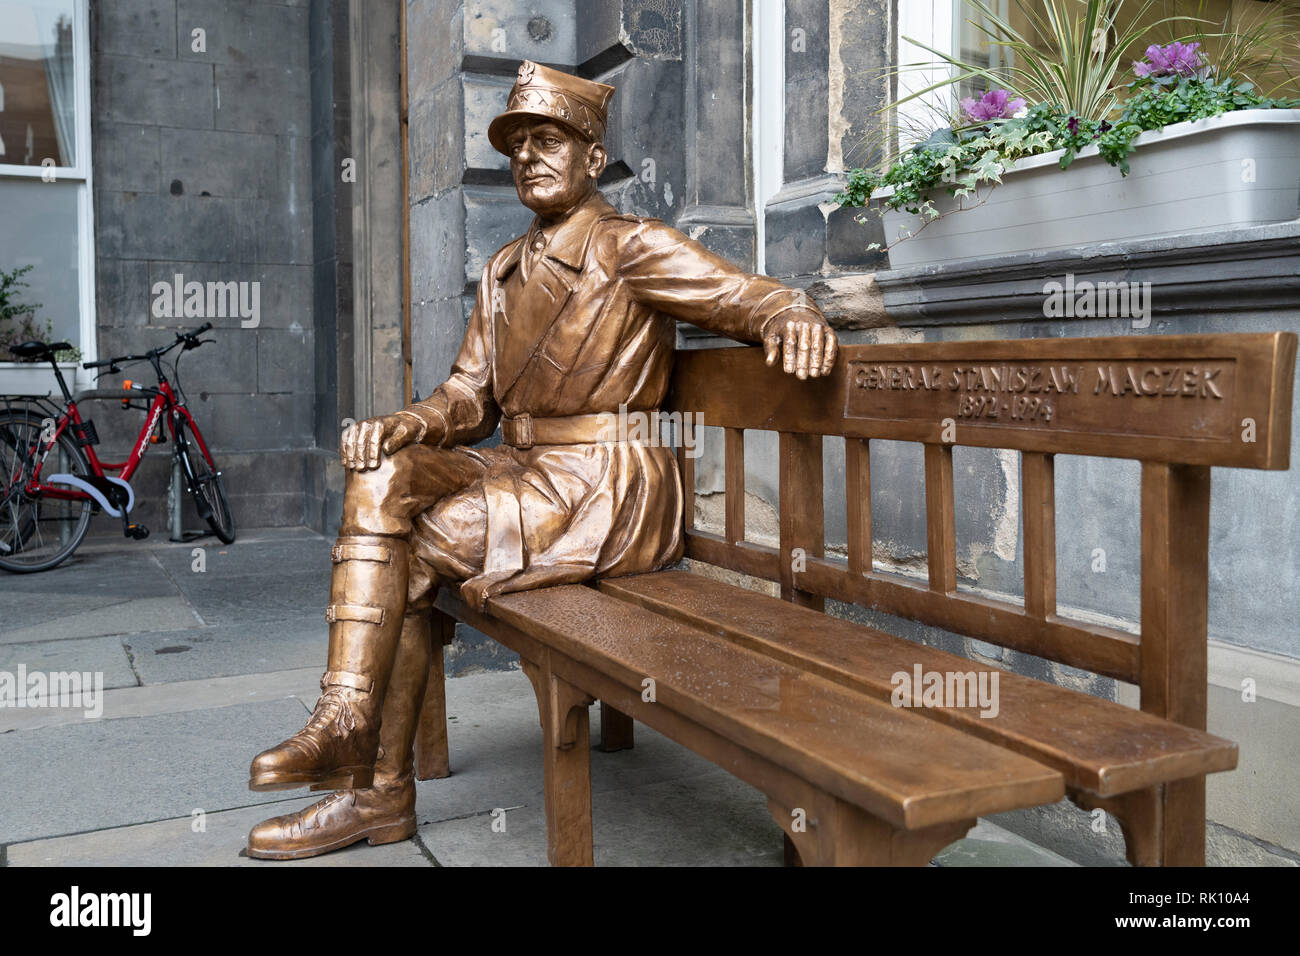 Statue de héros de guerre polonais le général Maczek au City Chambers dans la vieille ville d'Édimbourg, Écosse, Royaume-Uni Banque D'Images